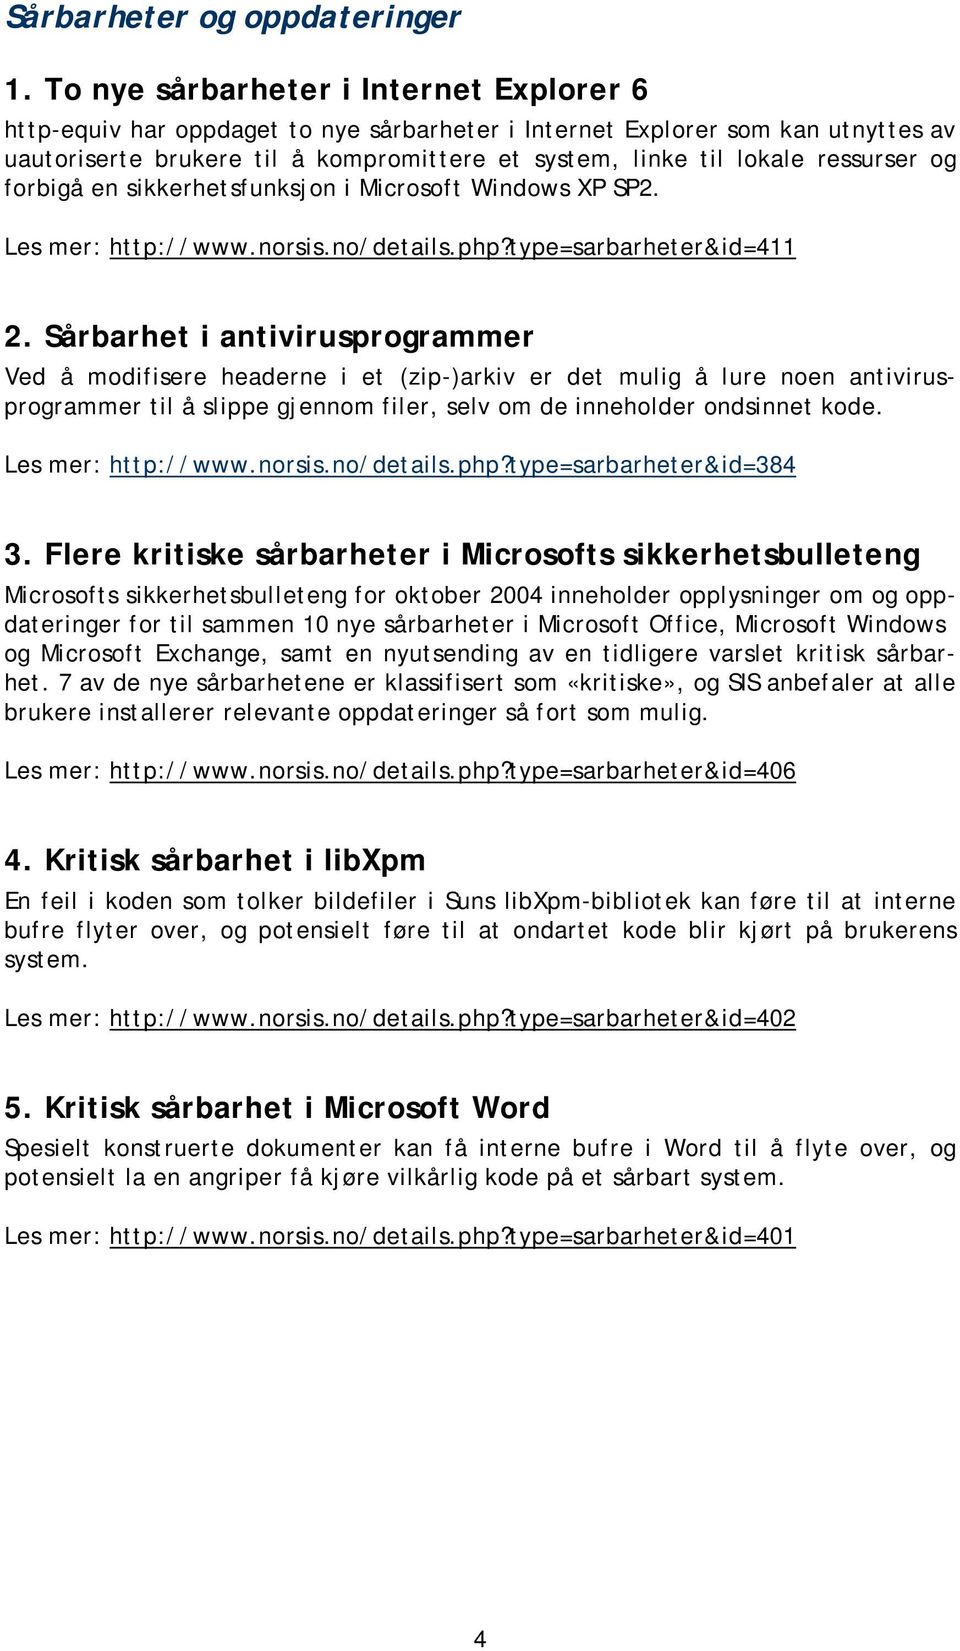 ressurser og forbigå en sikkerhetsfunksjon i Microsoft Windows XP SP2. Les mer: http://www.norsis.no/details.php?type=sarbarheter&id=411 2.